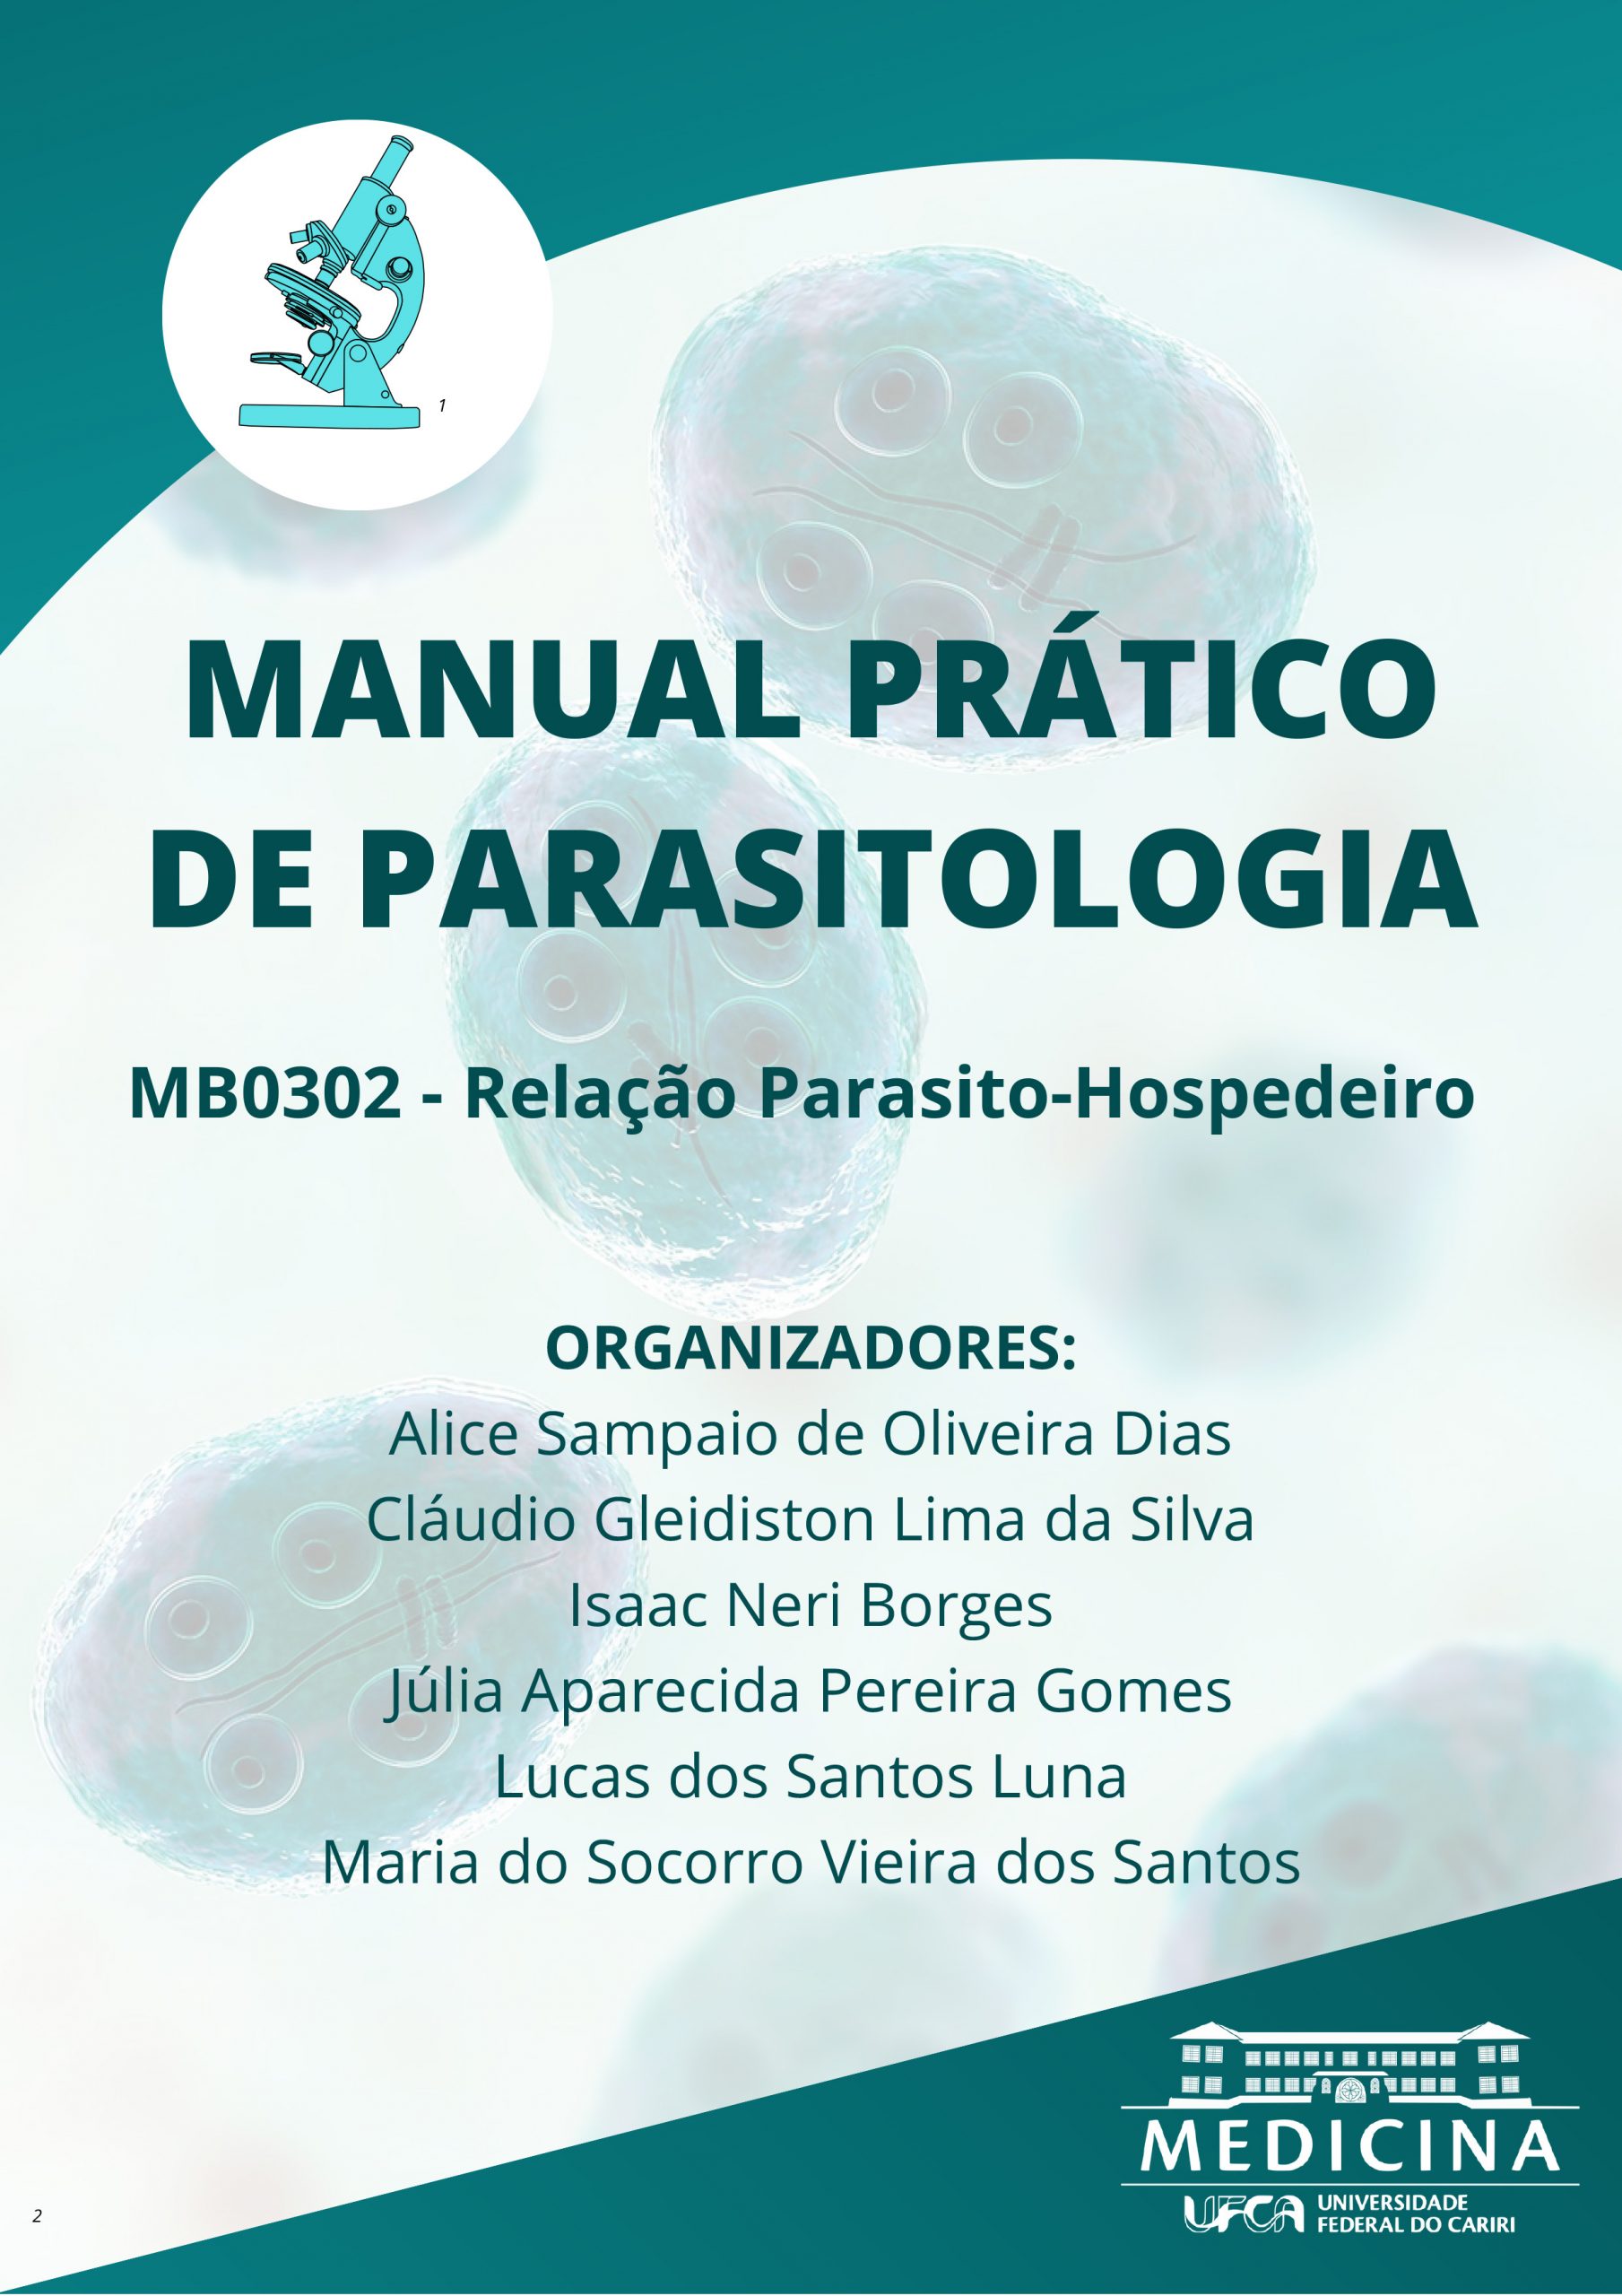 Manual prático de parasitologia thumbnail